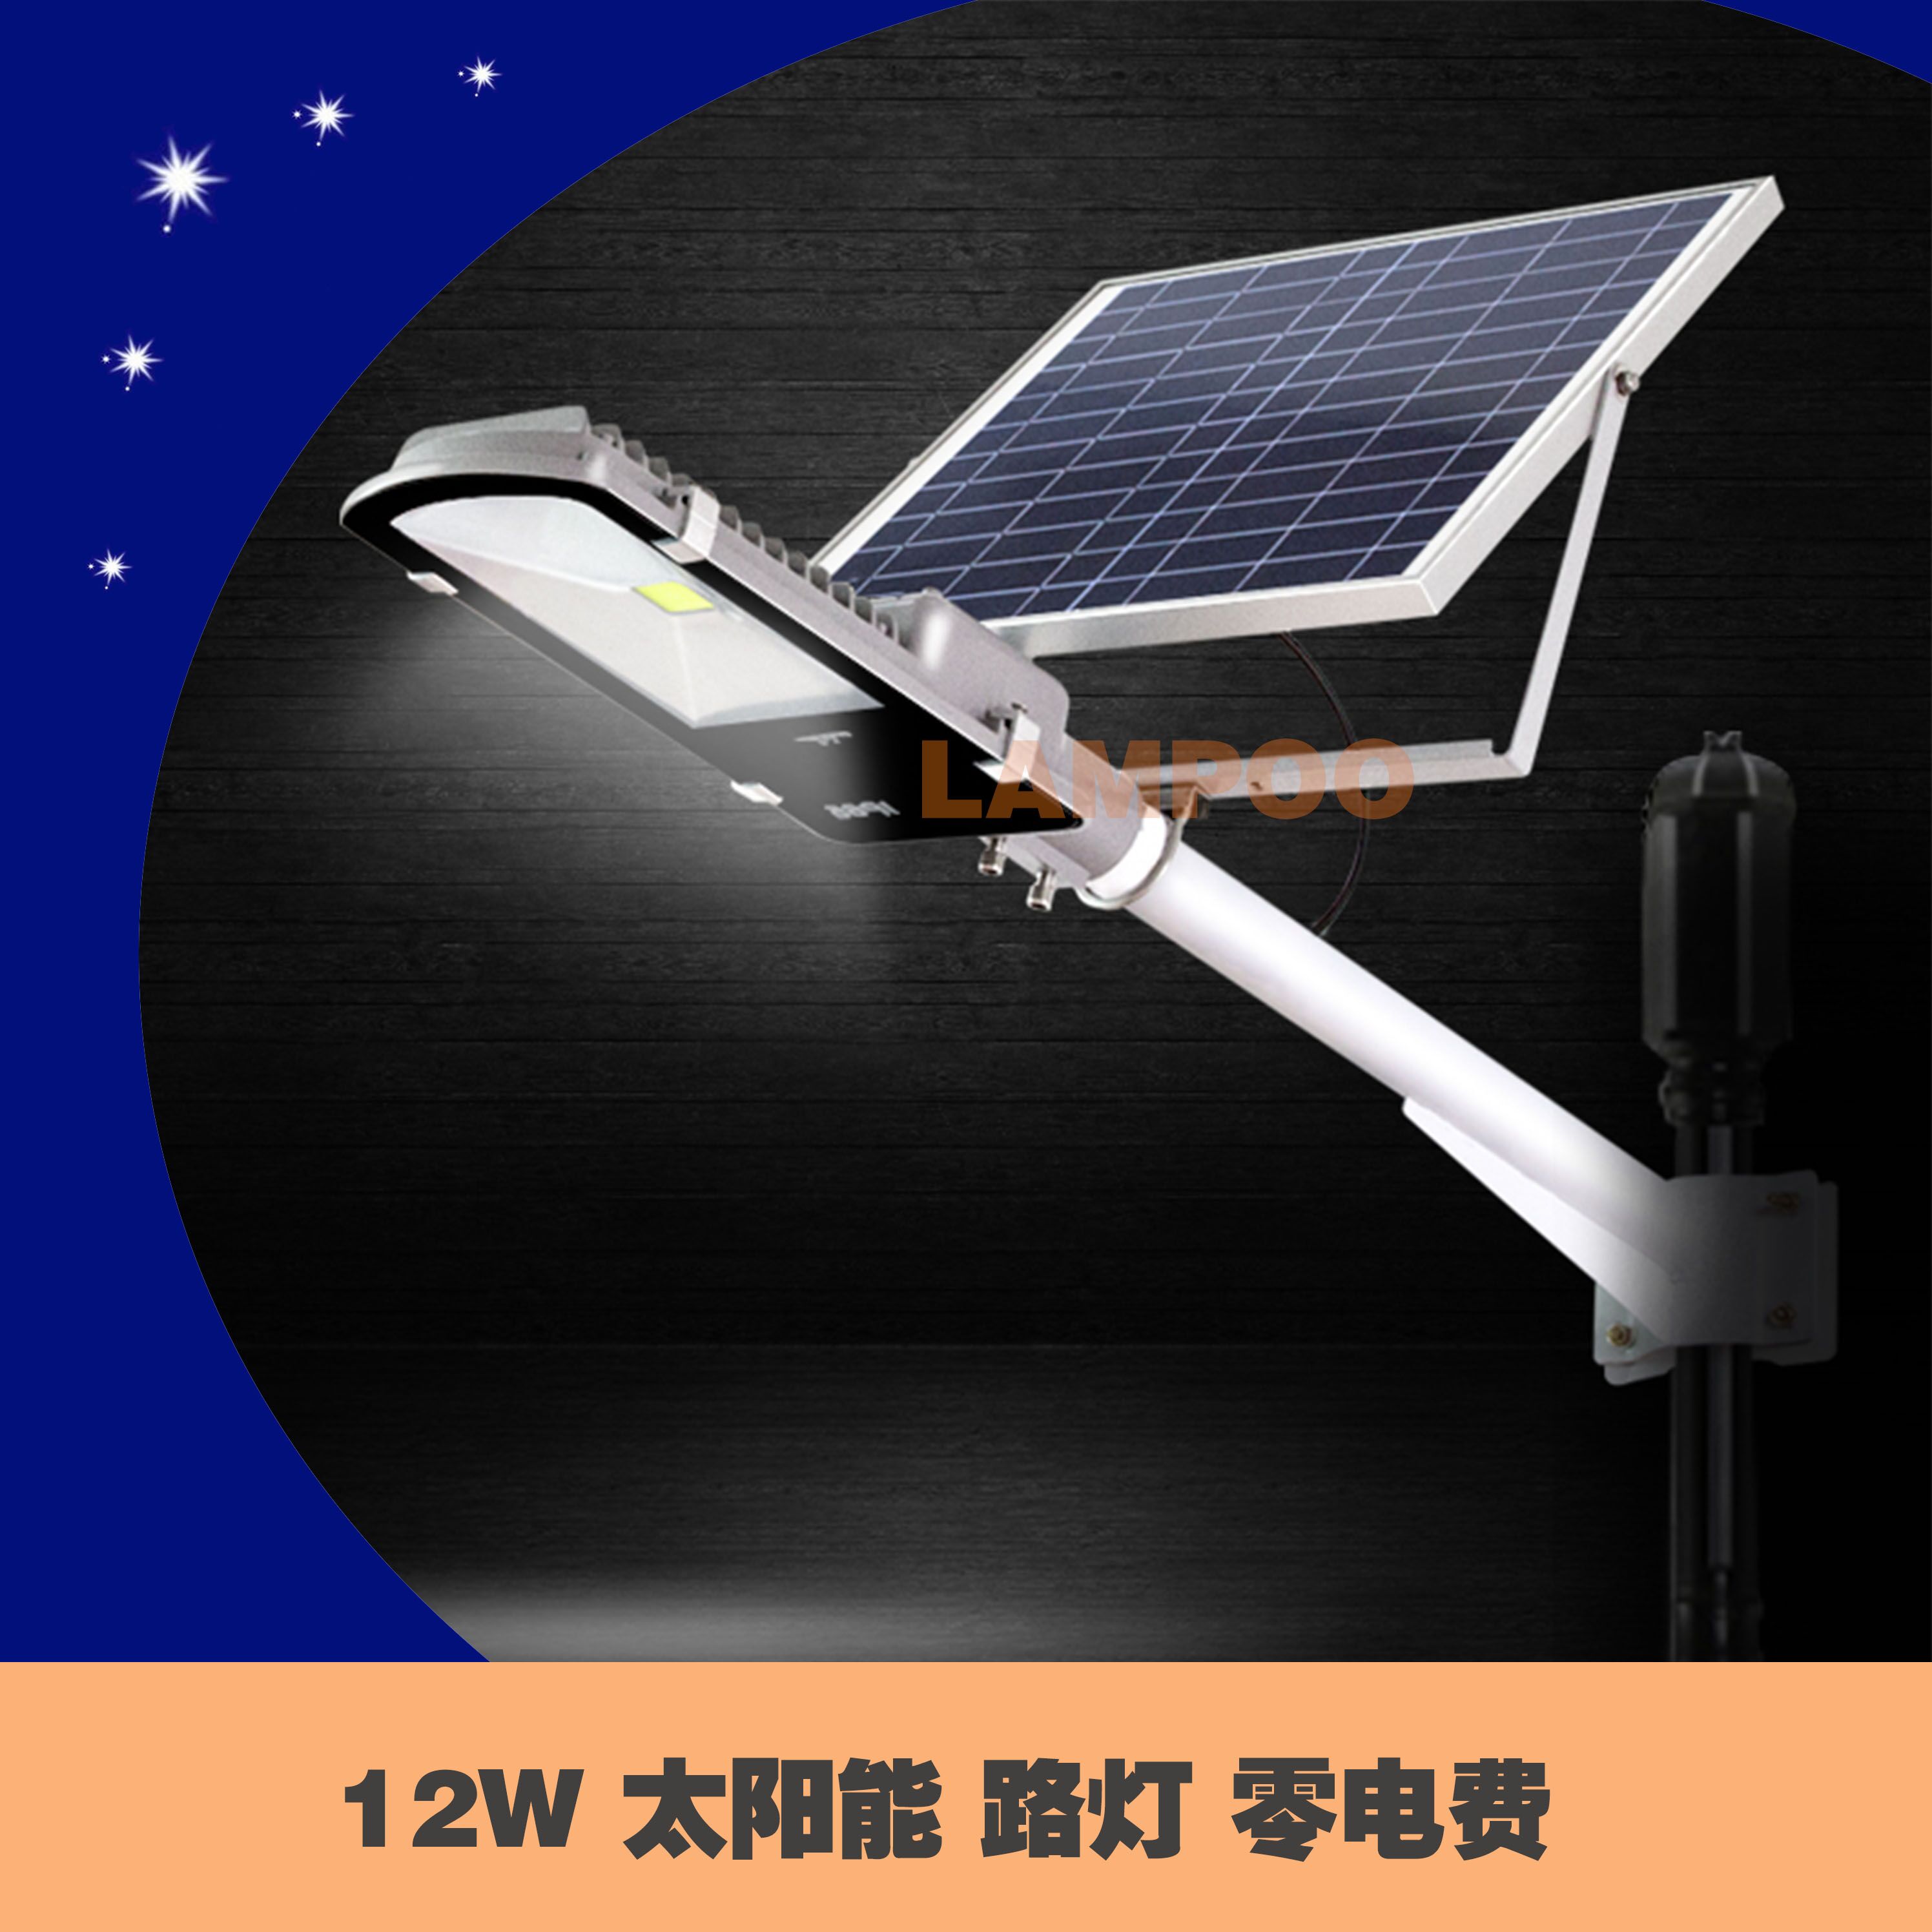 广东 LED 太阳能路灯生产厂家 东莞优质厂家生产太阳能灯 价格优惠 LED太阳能路灯供应商批发